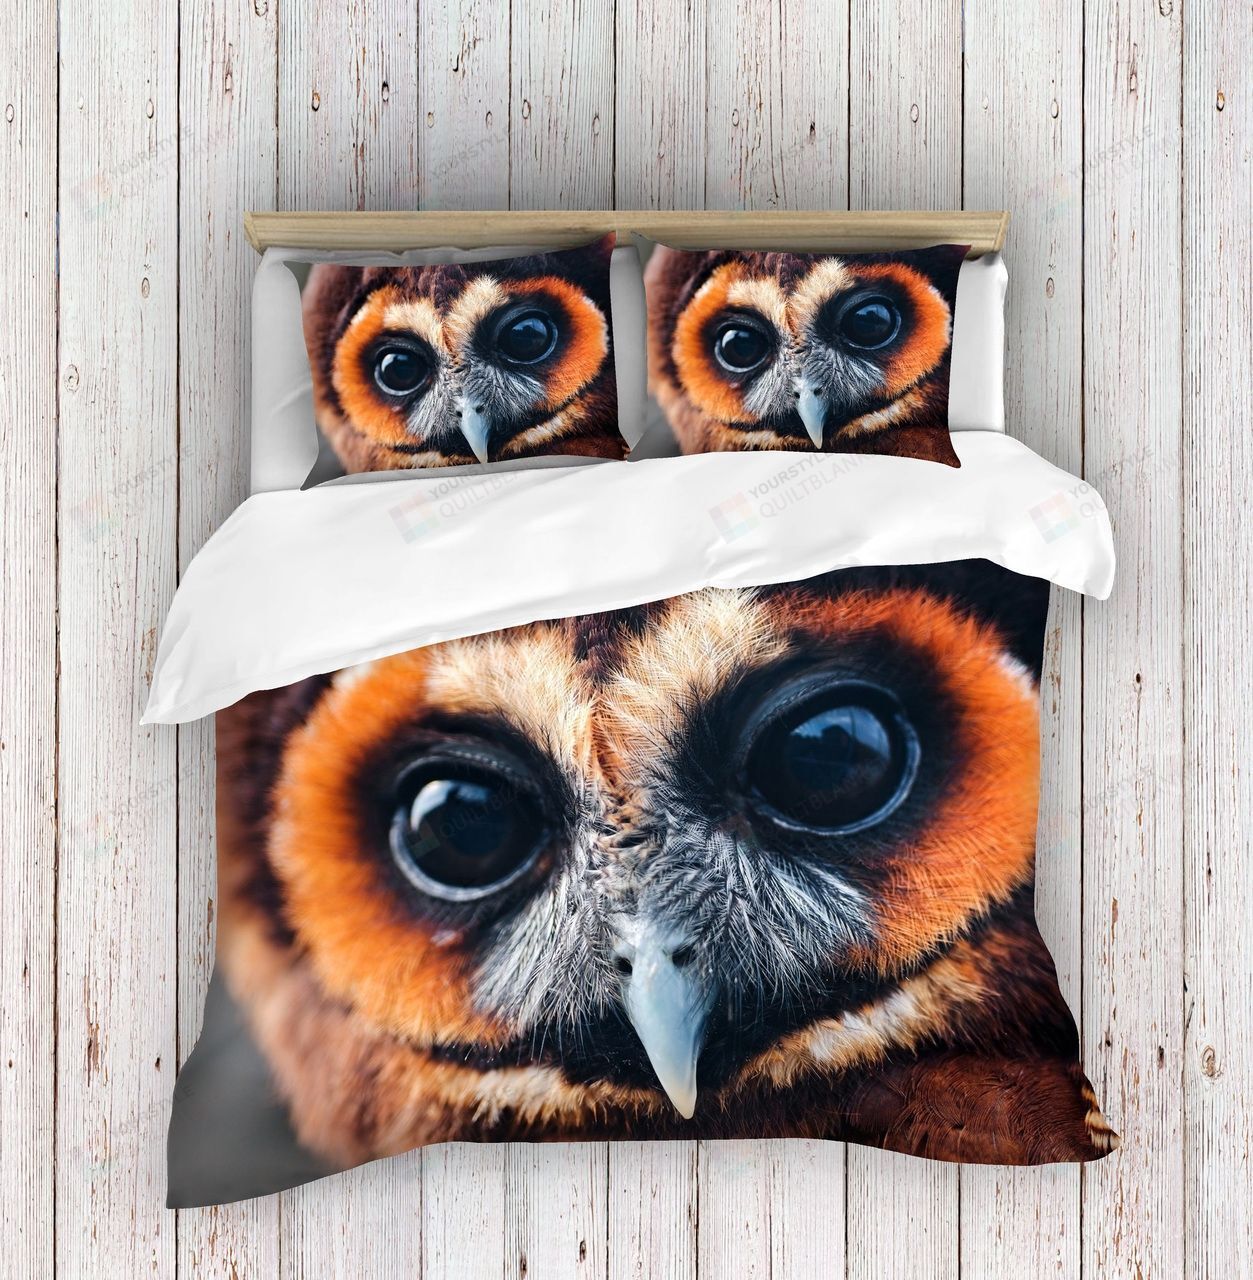 Owl Face Bedding Set Bed Sheets Spread Comforter Duvet Cover Bedding Sets